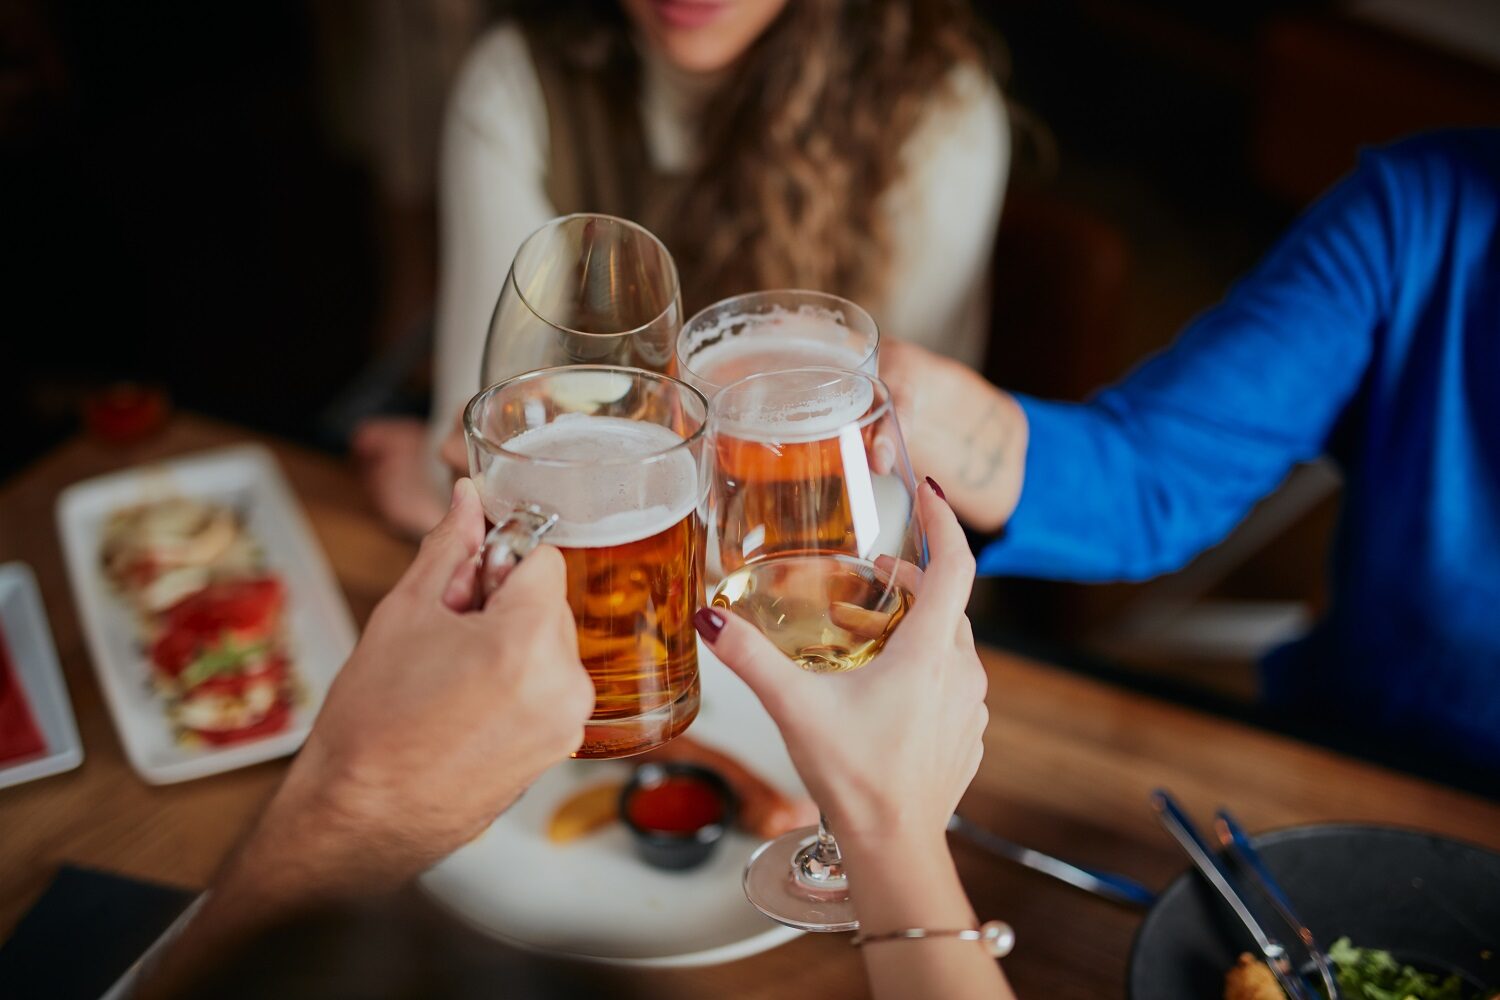 Grup de prieteni care sarbatoresc intr-un restaurant si ciocnesc un pahar de bere - imagine reprezentativă pentru cum asociezi berea cu mâncarea